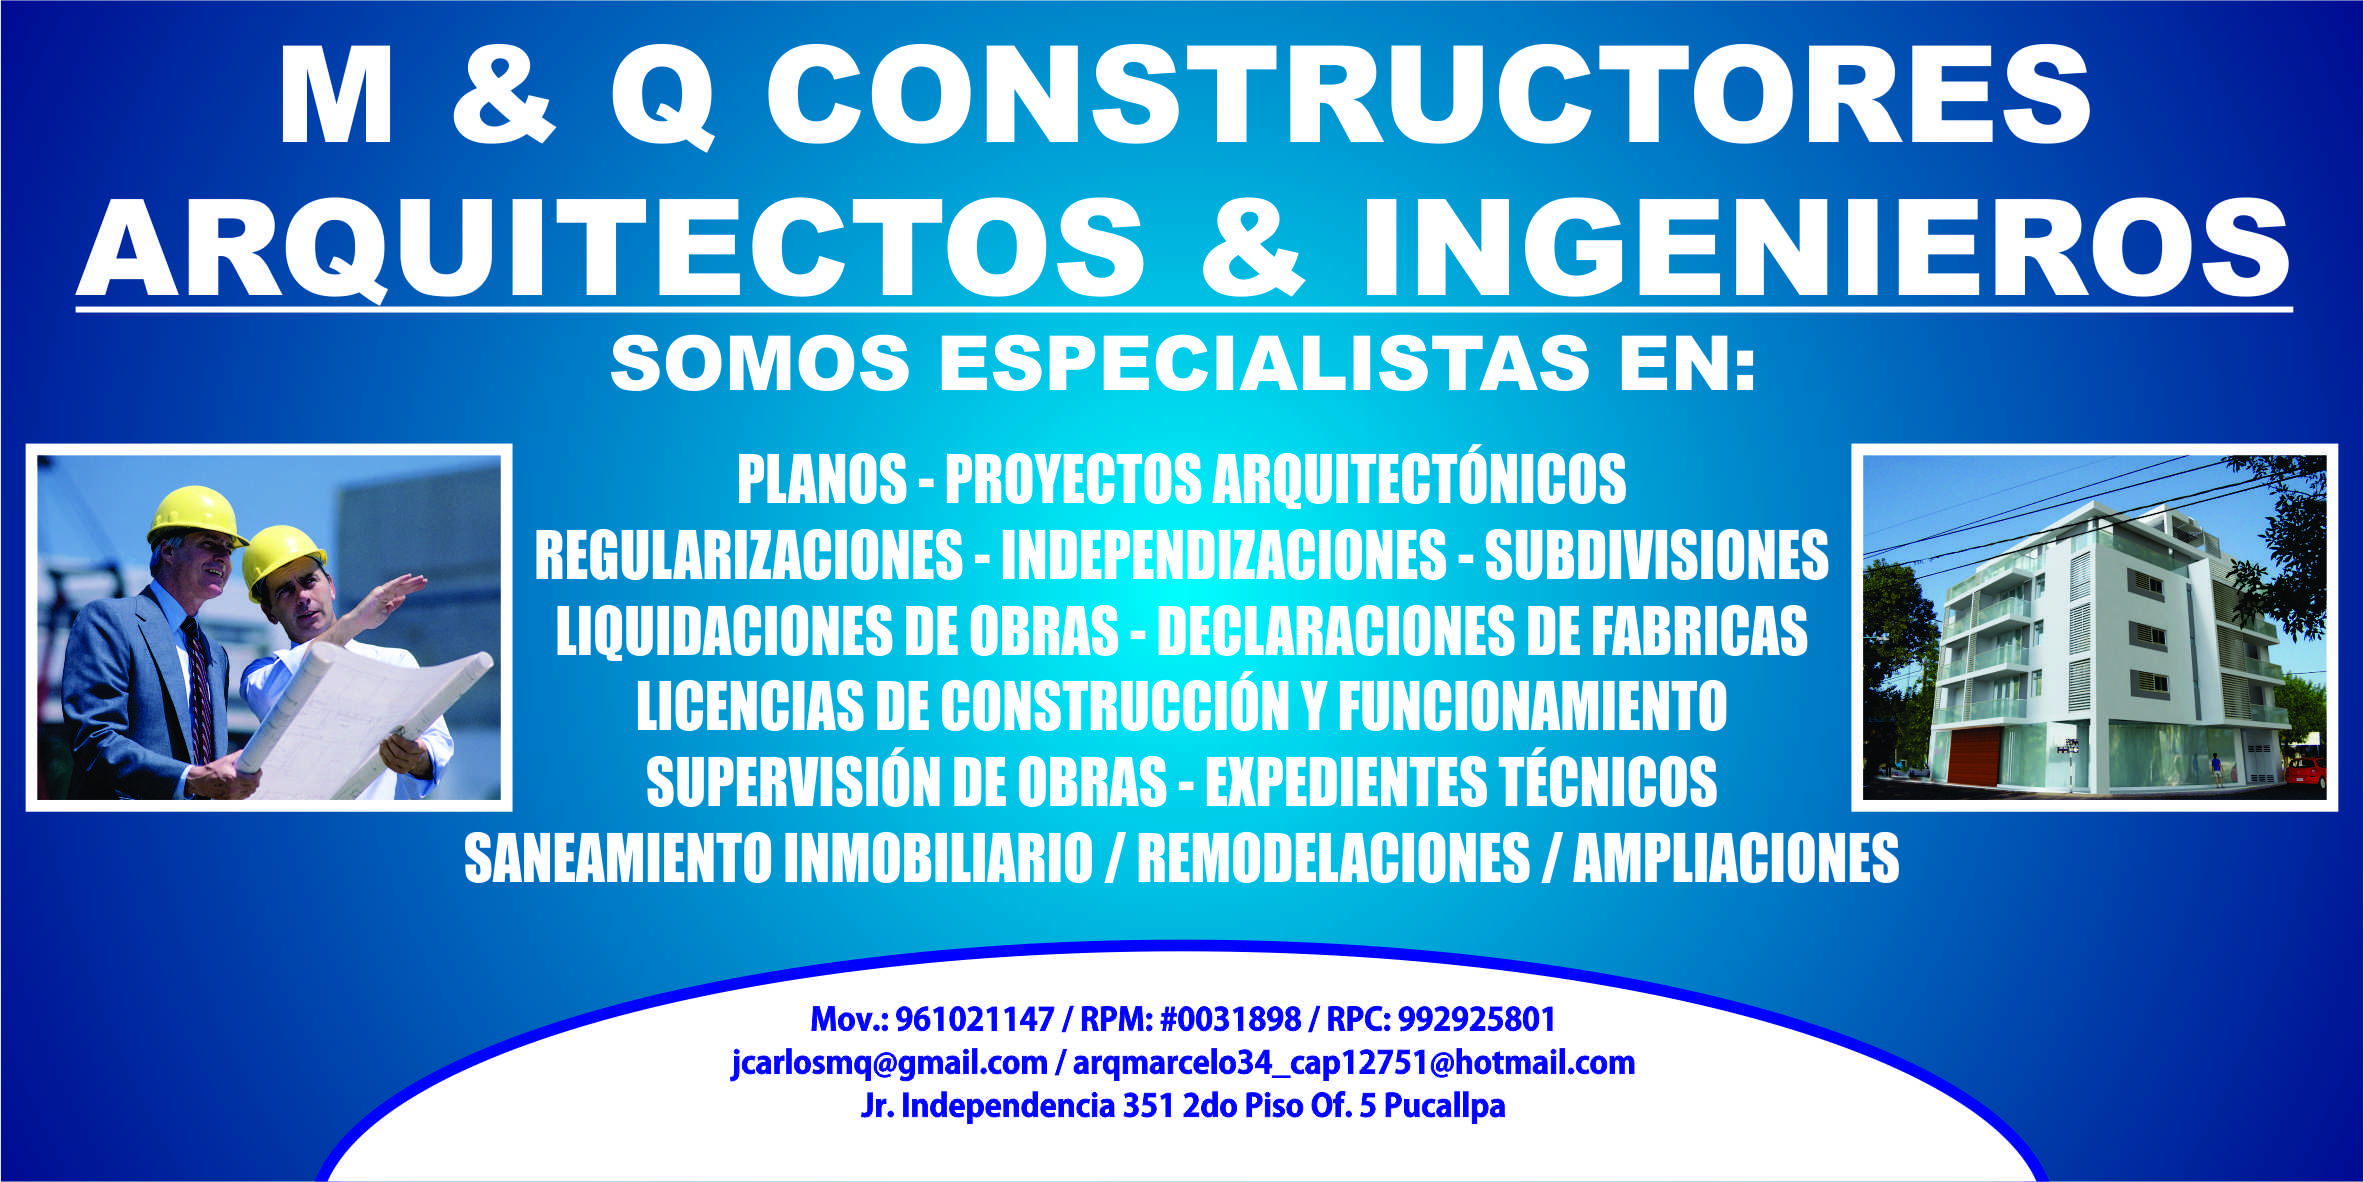 M & Q Constructores & Consultores / Arquitectos & Ingenieros